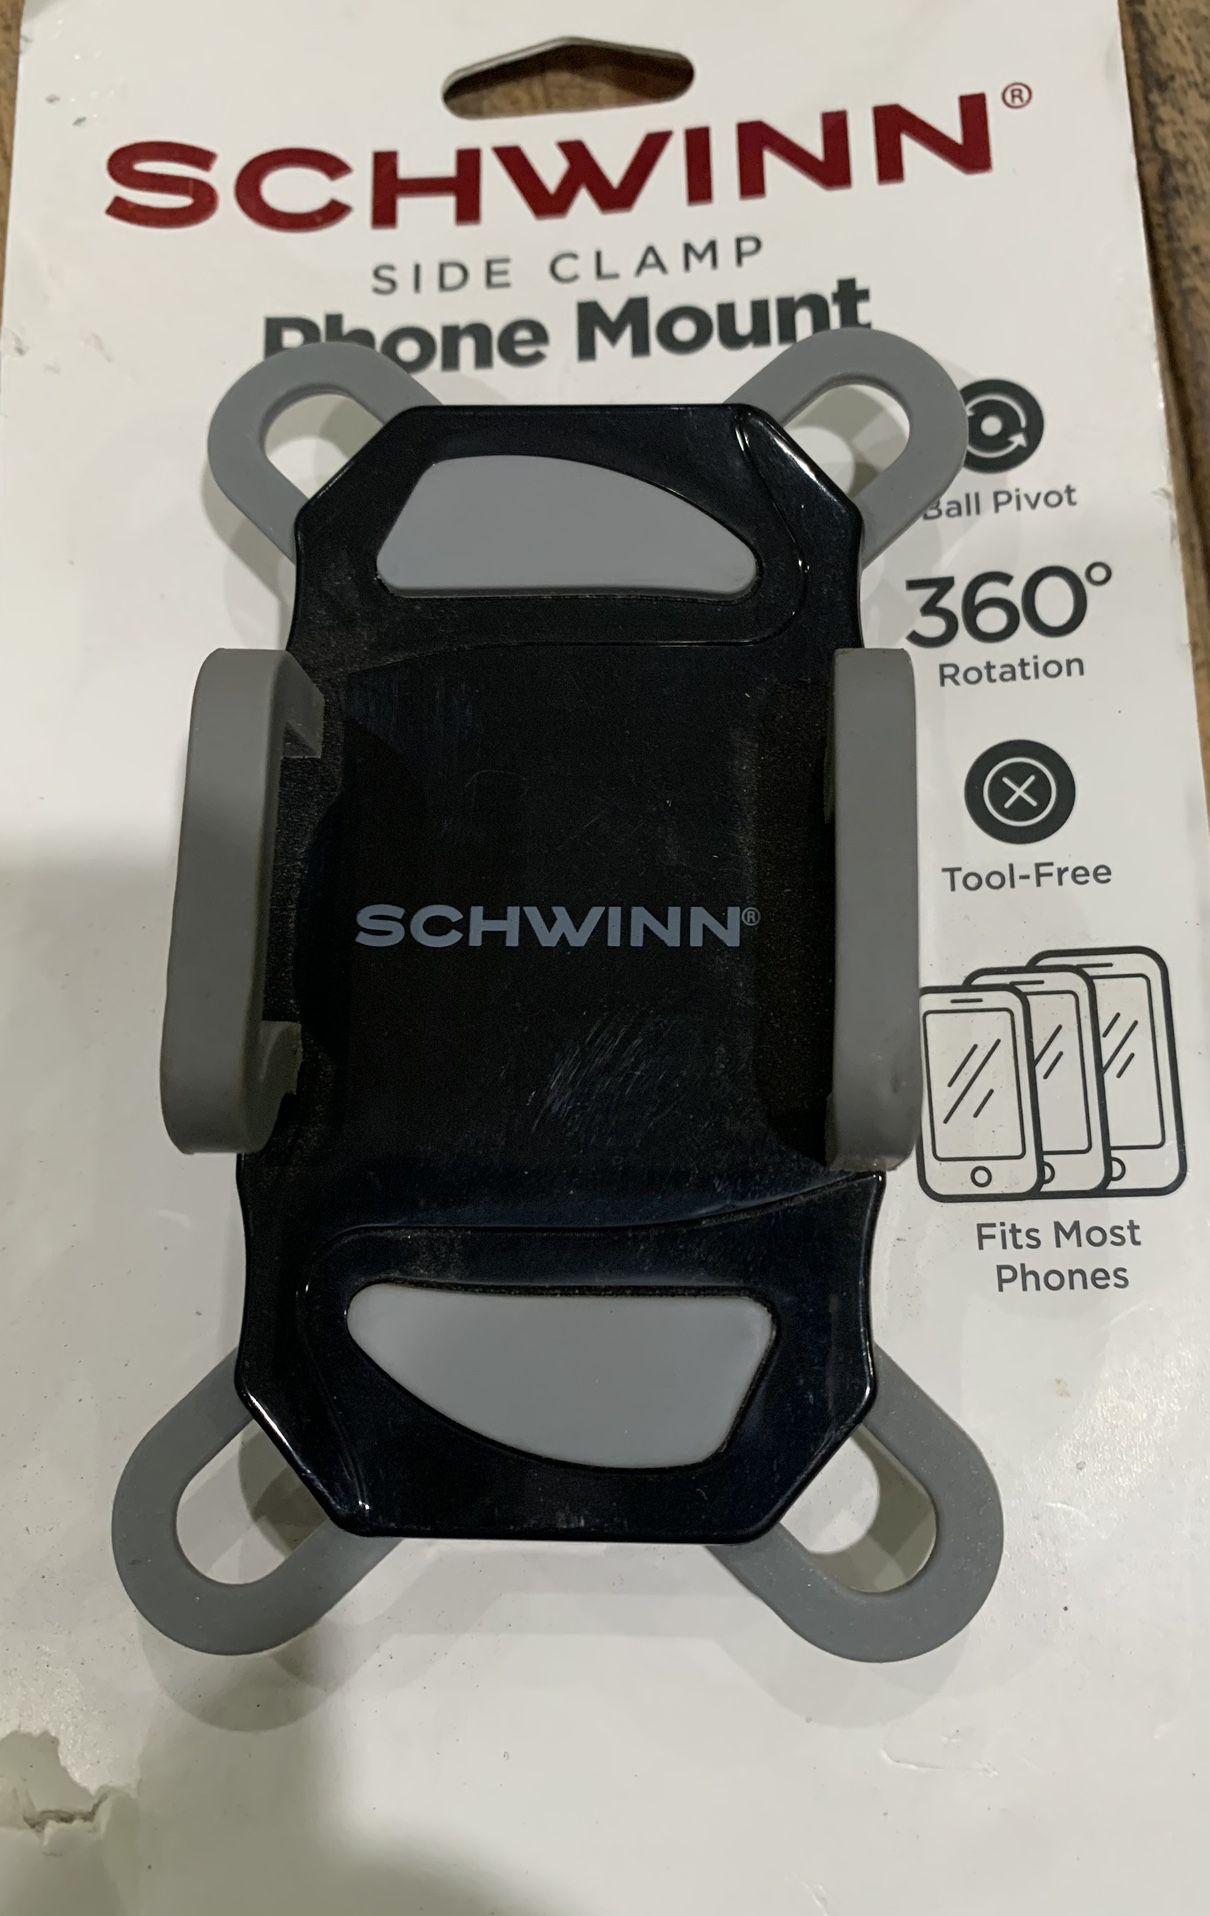 SCHWINN phone mount